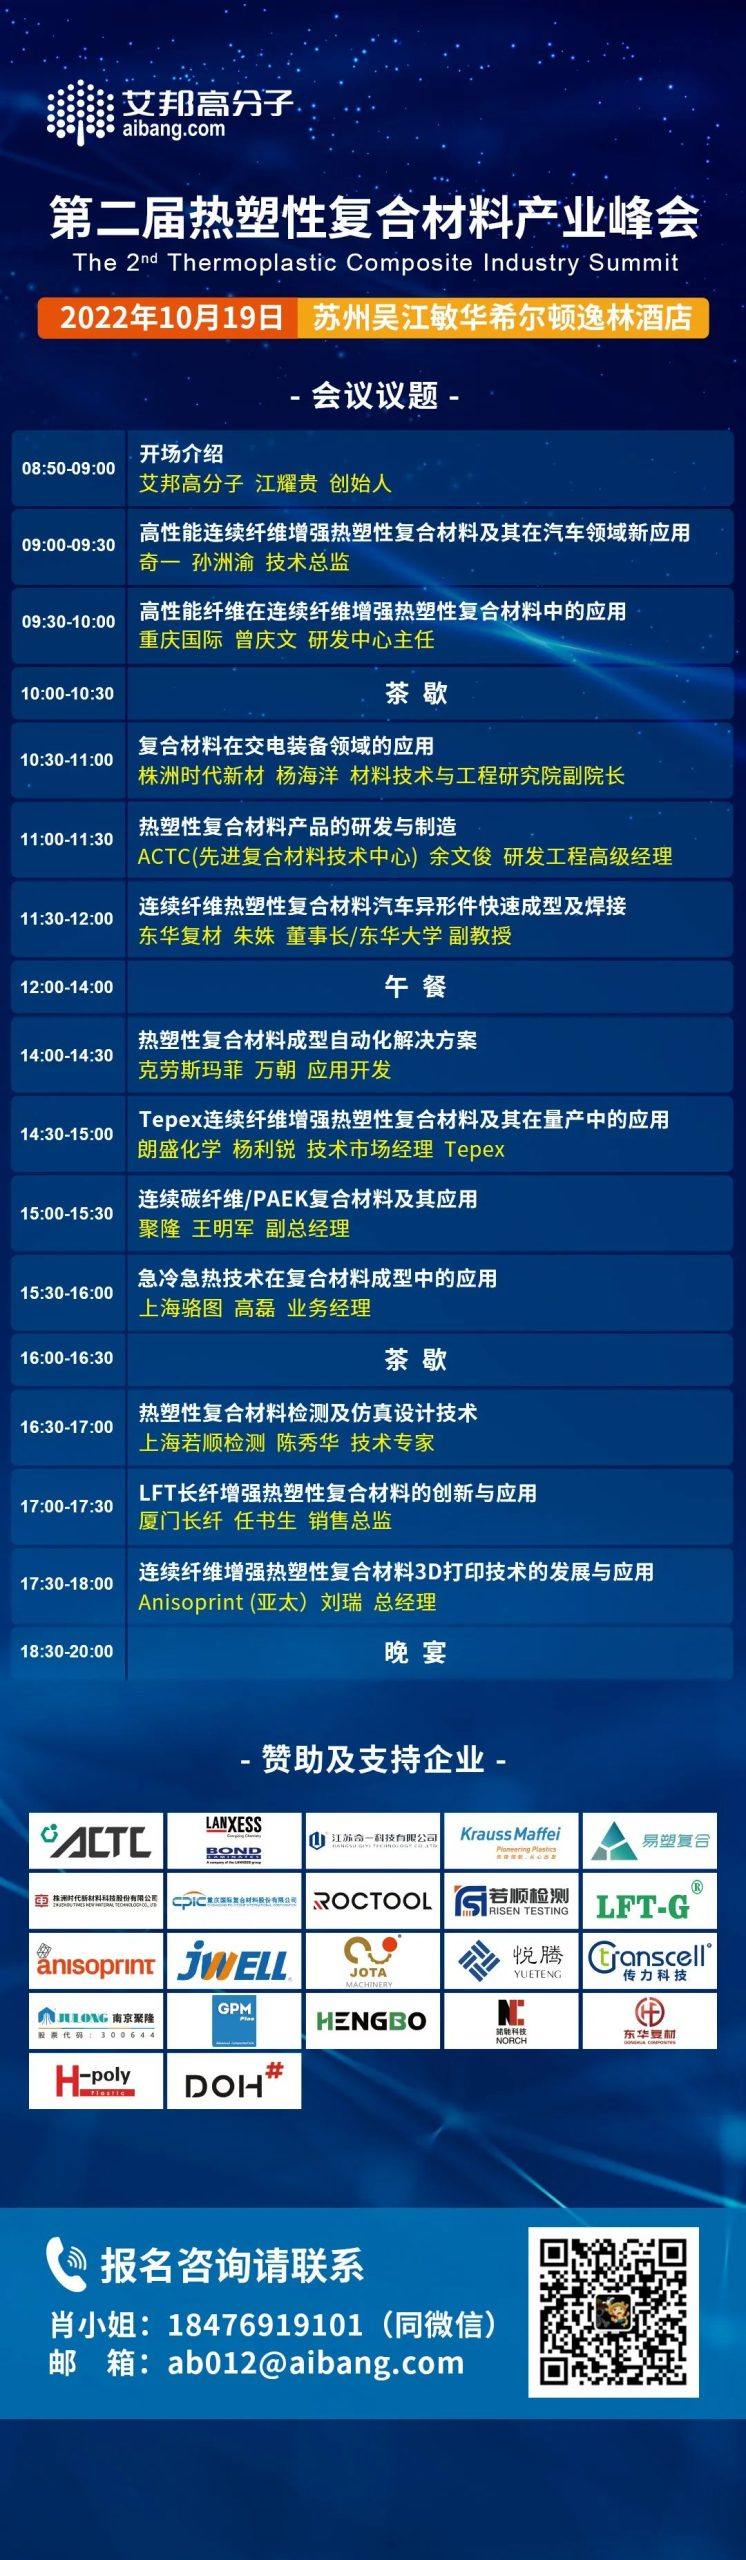 上海骆图将出席第二届热塑性复合材料产业峰会并做主题演讲